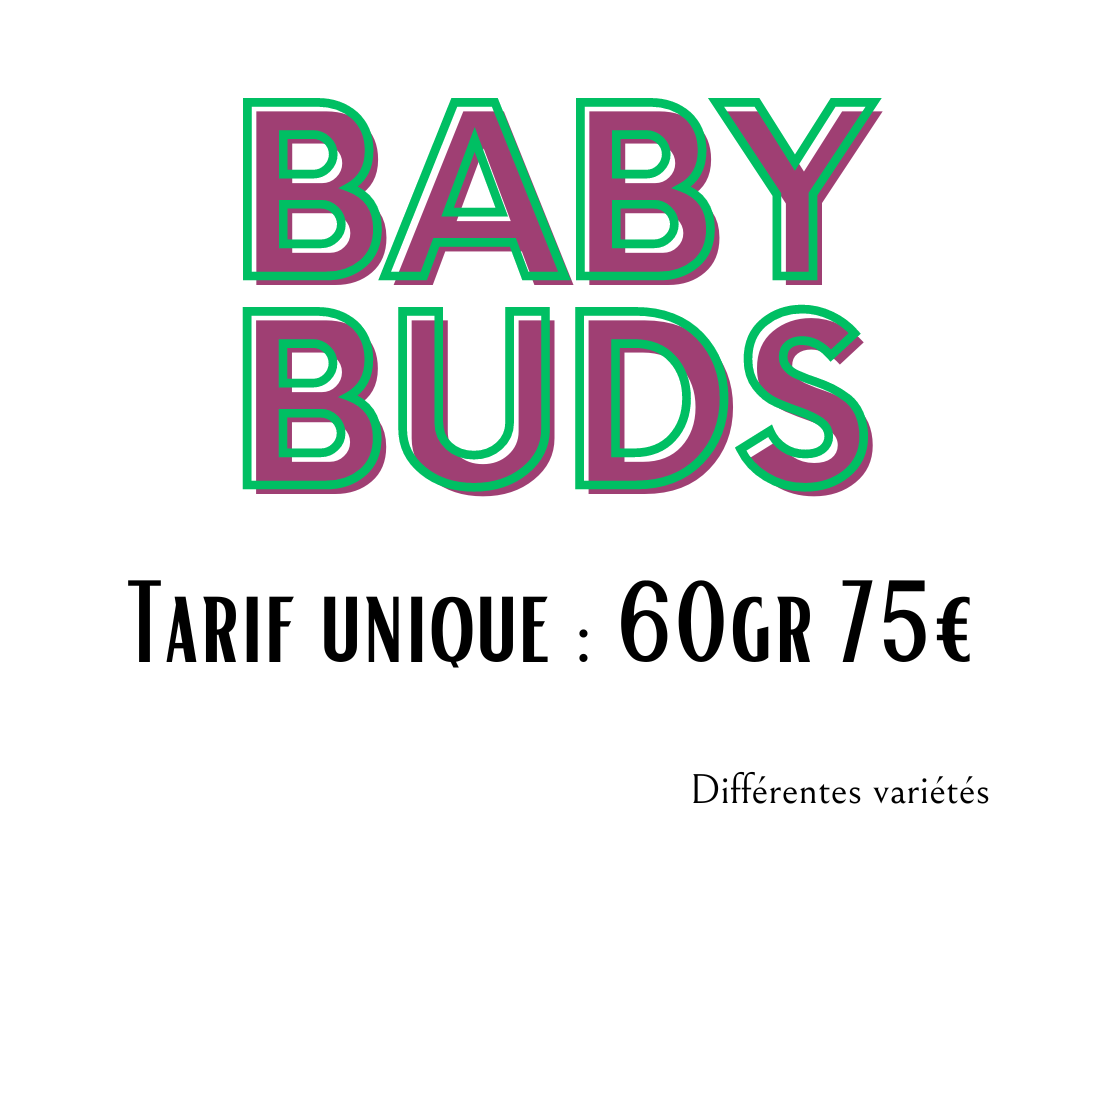 BABY BUDS au choix dès 1.25€/gr | 60gr